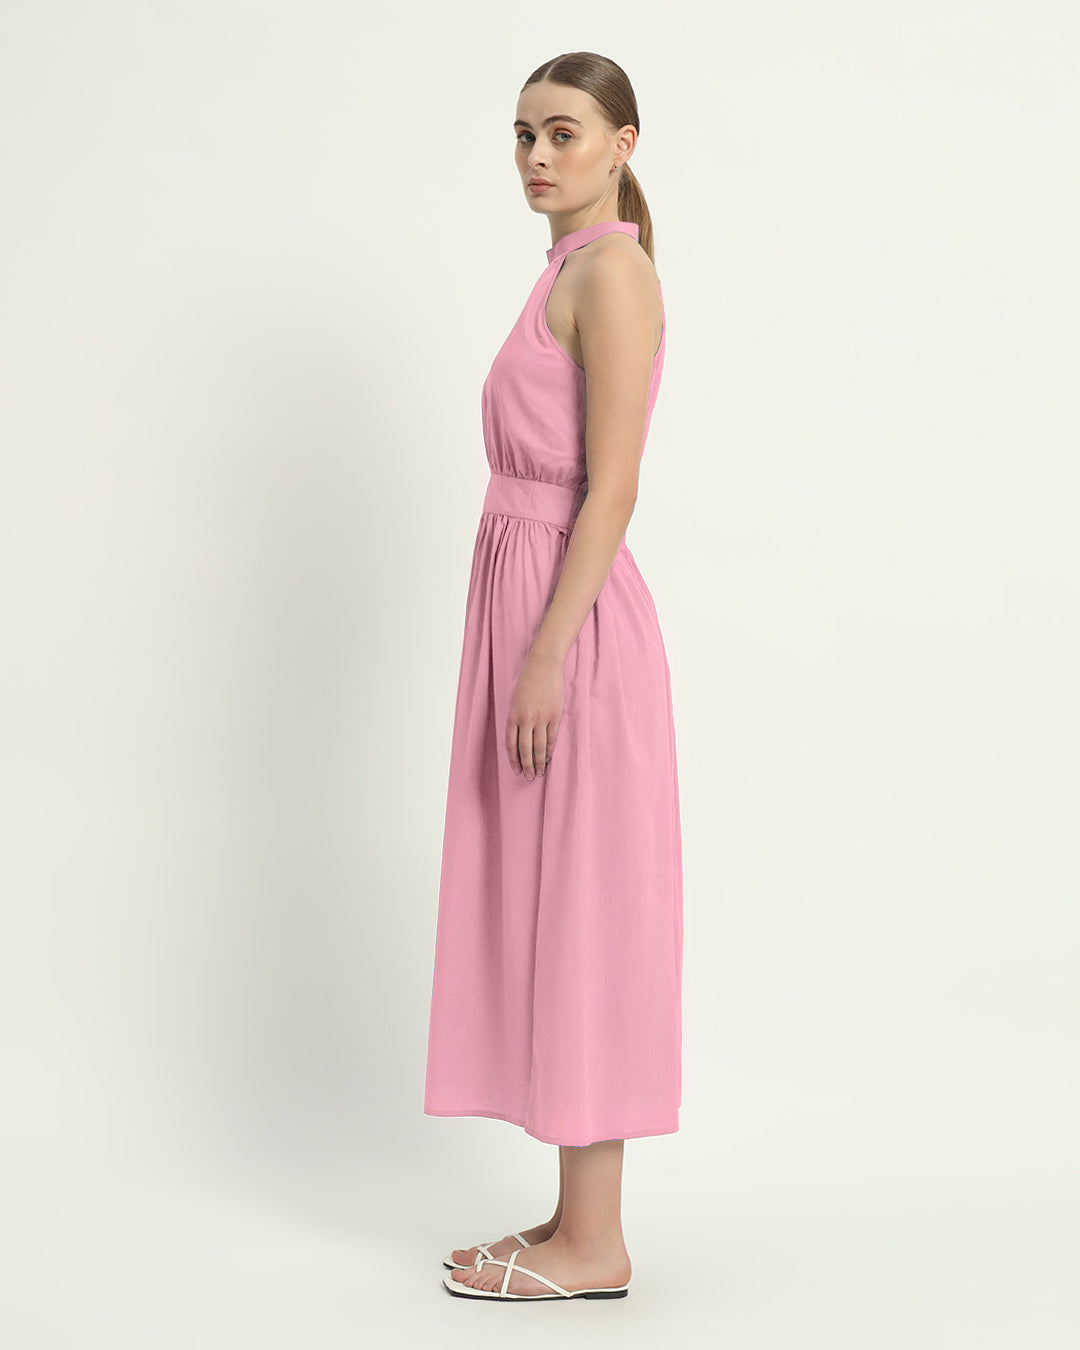 The Fondant Pink Massena Cotton Dress